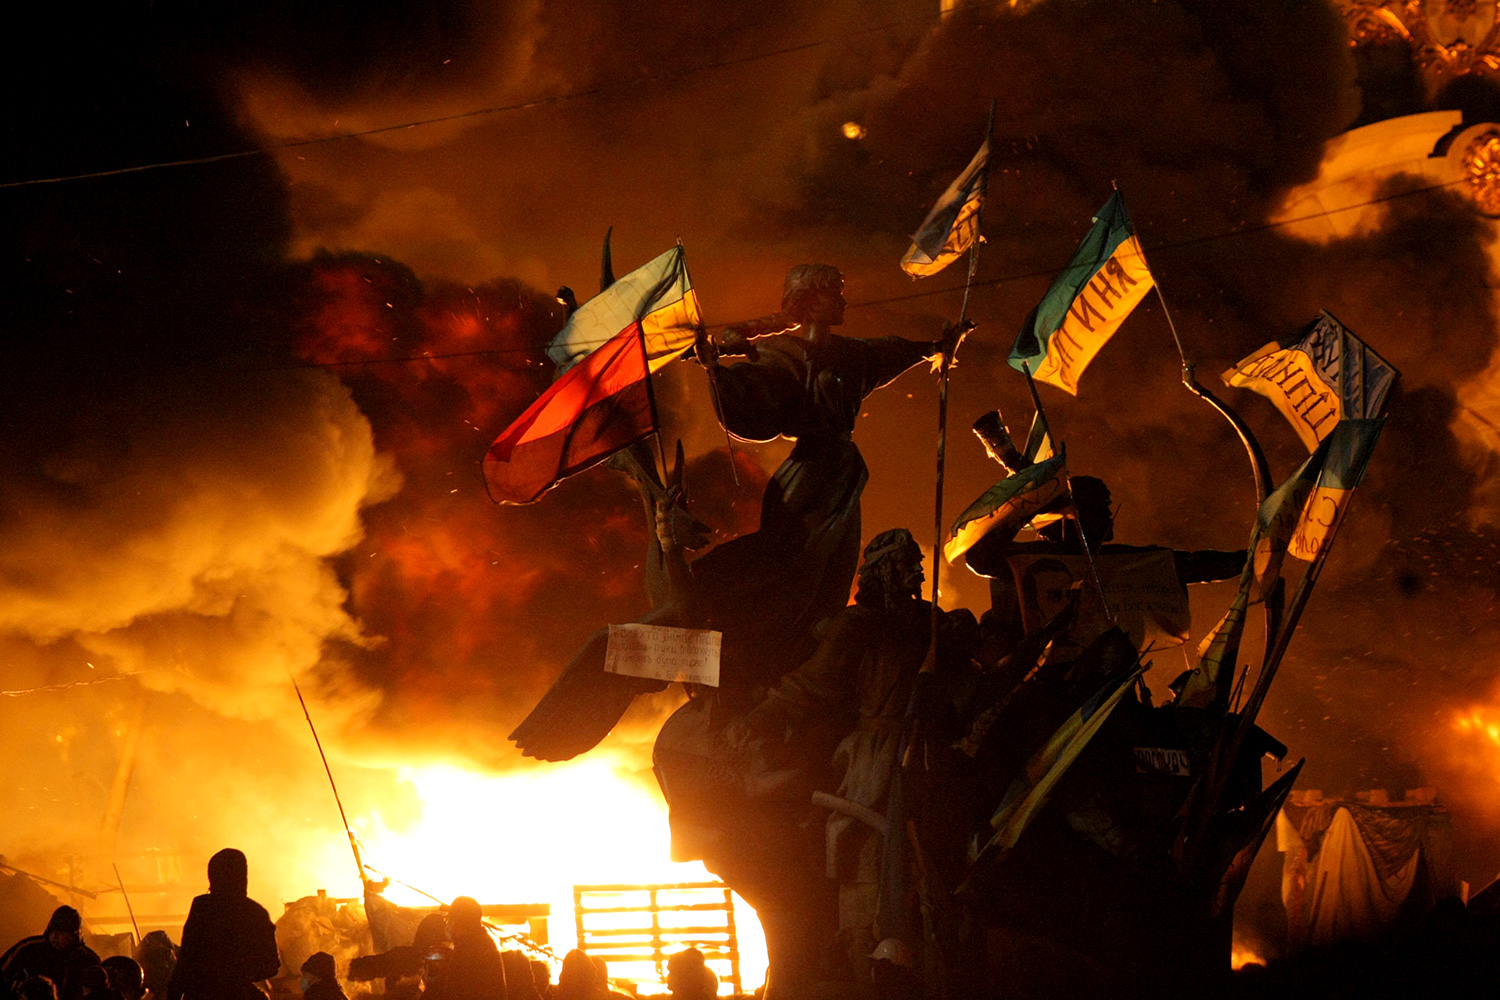 Де відбувалися сутички між активістами Євромайдану та силовиками - інфорграфіка